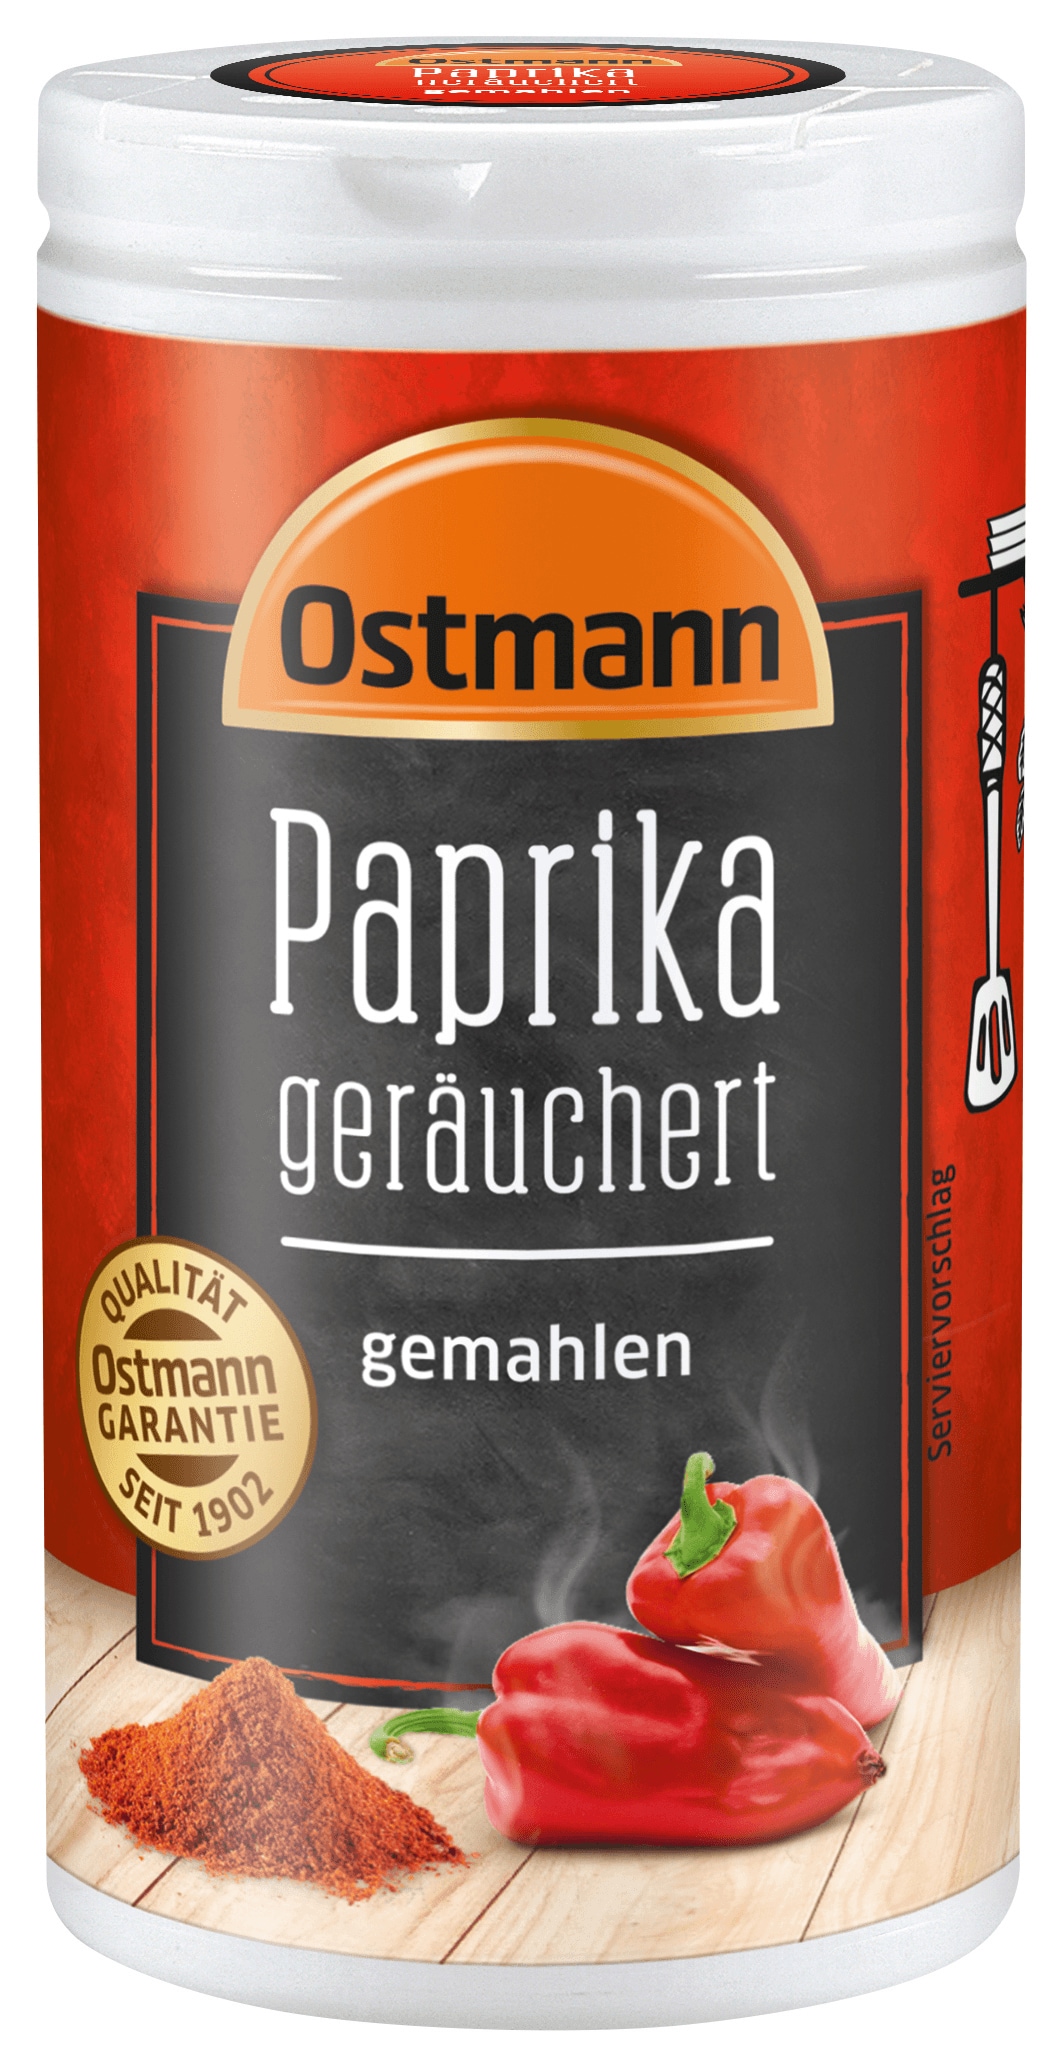 Ostmann Paprika geräuchert gemahlen 35g bei REWE online bestellen!